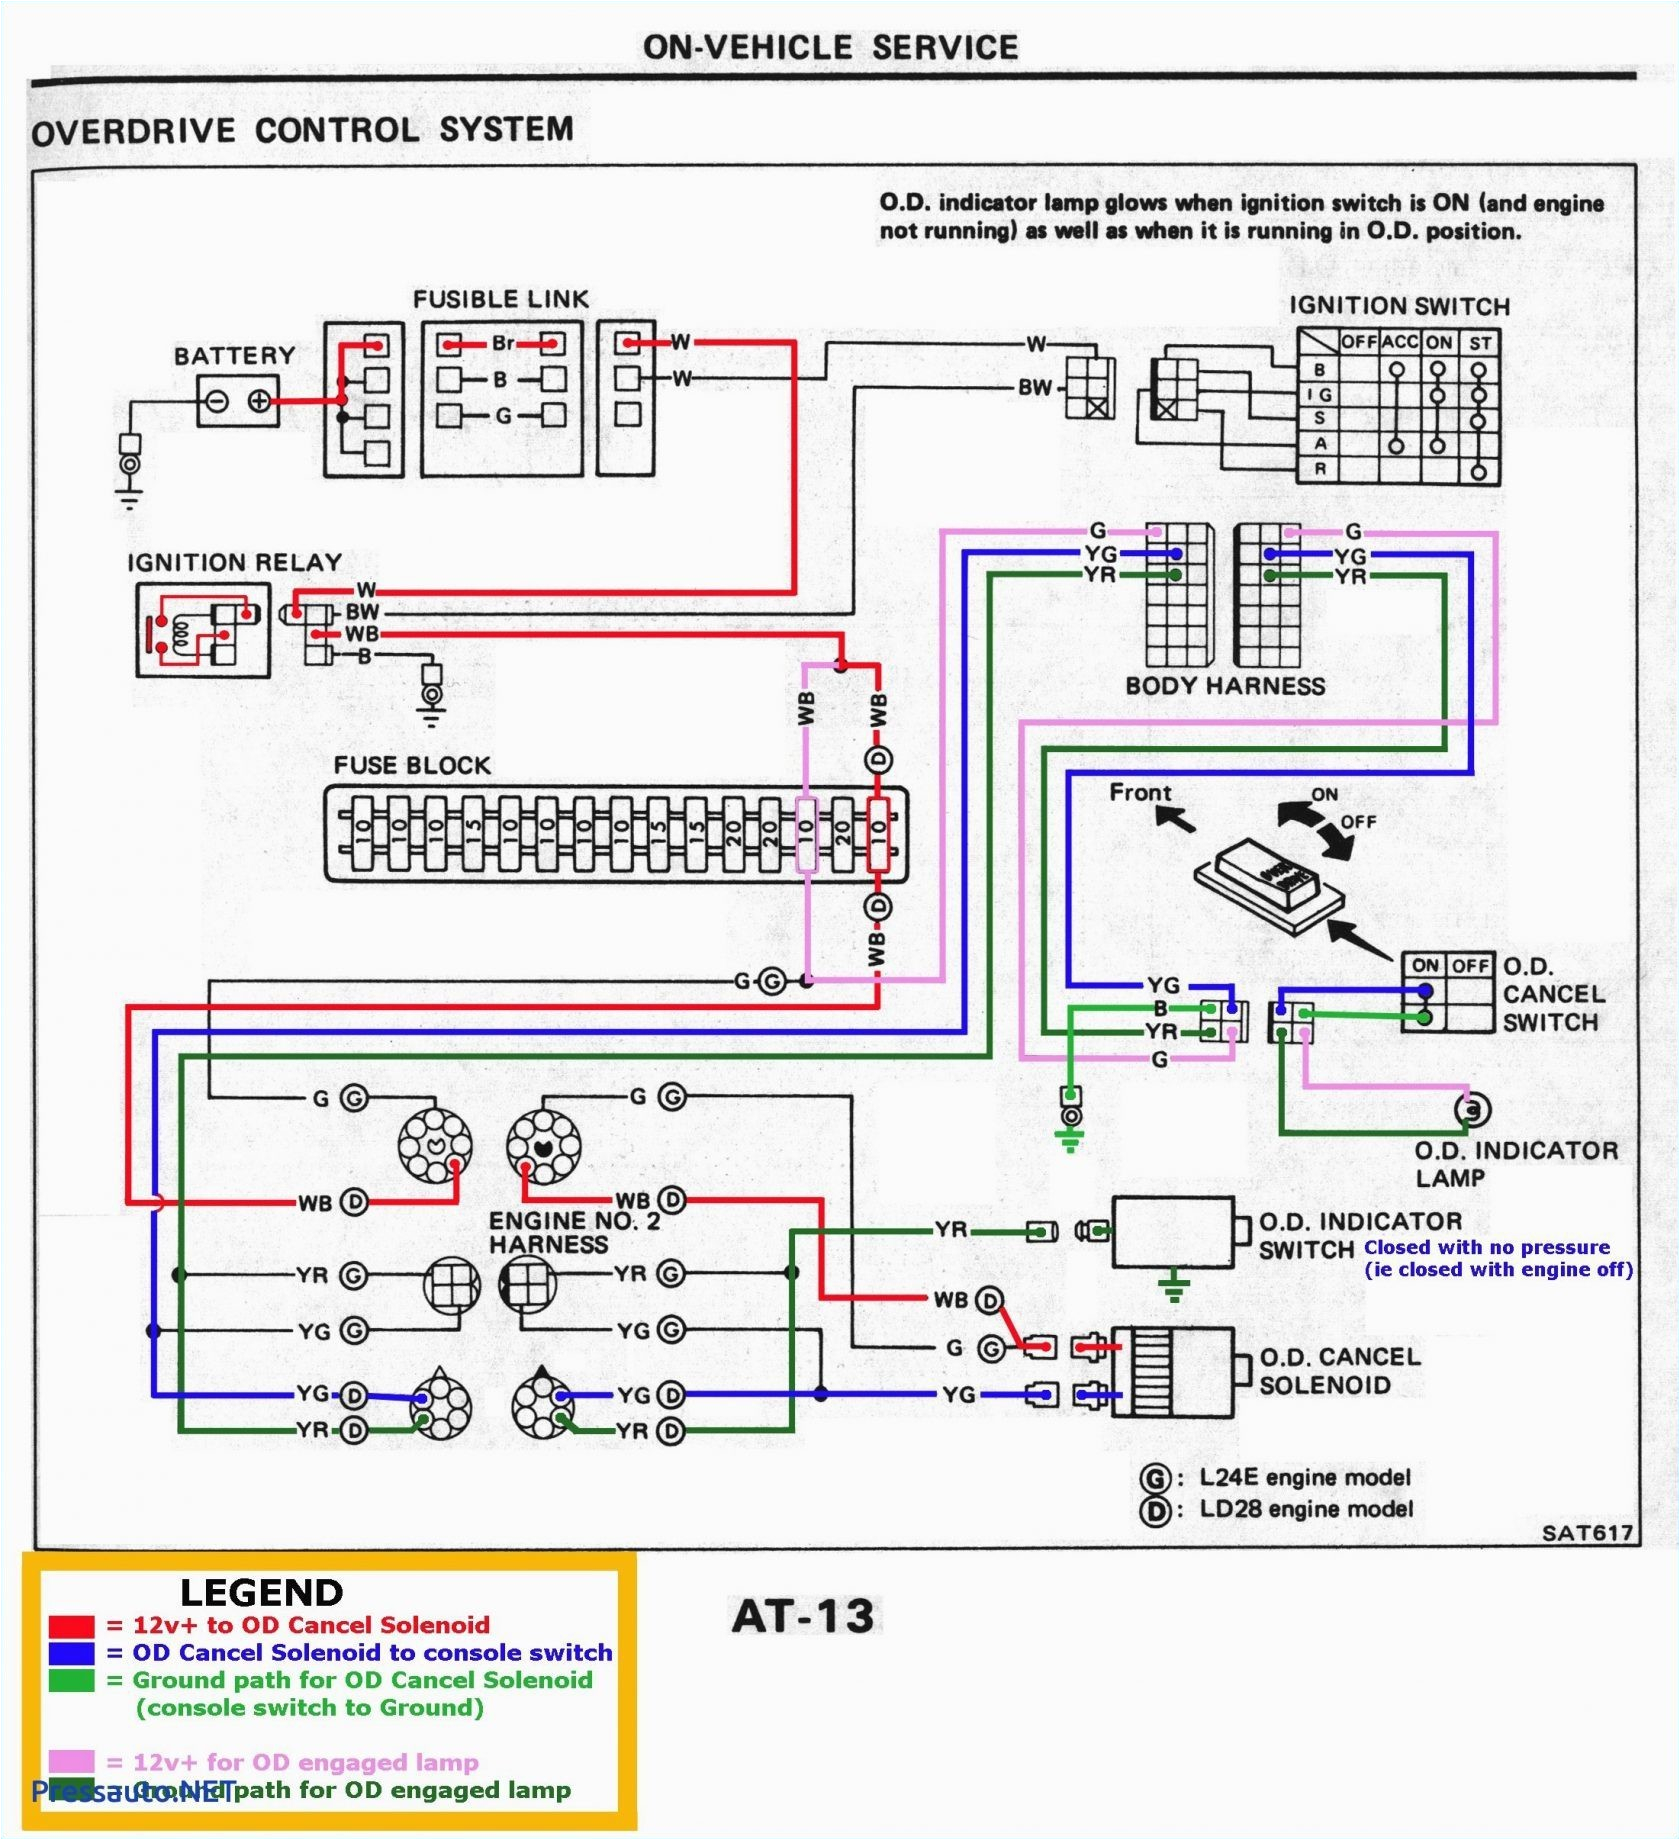 2006 Chevy Silverado Trailer Wiring Diagram 2006 Chevrolet Silverado Trailer Wiring Harness Data Wiring